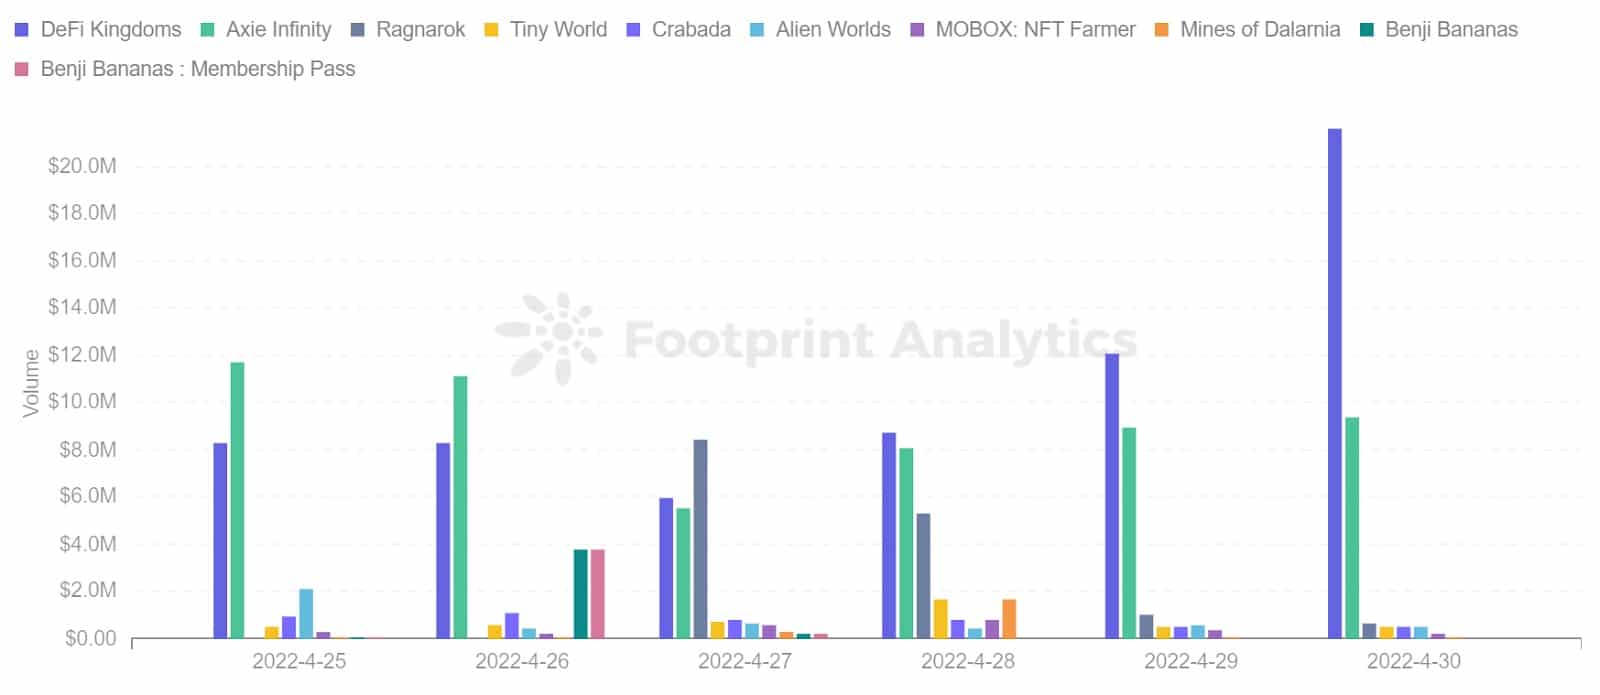 Footprint Analytics - Класация на 10-те най-добри игри по обем